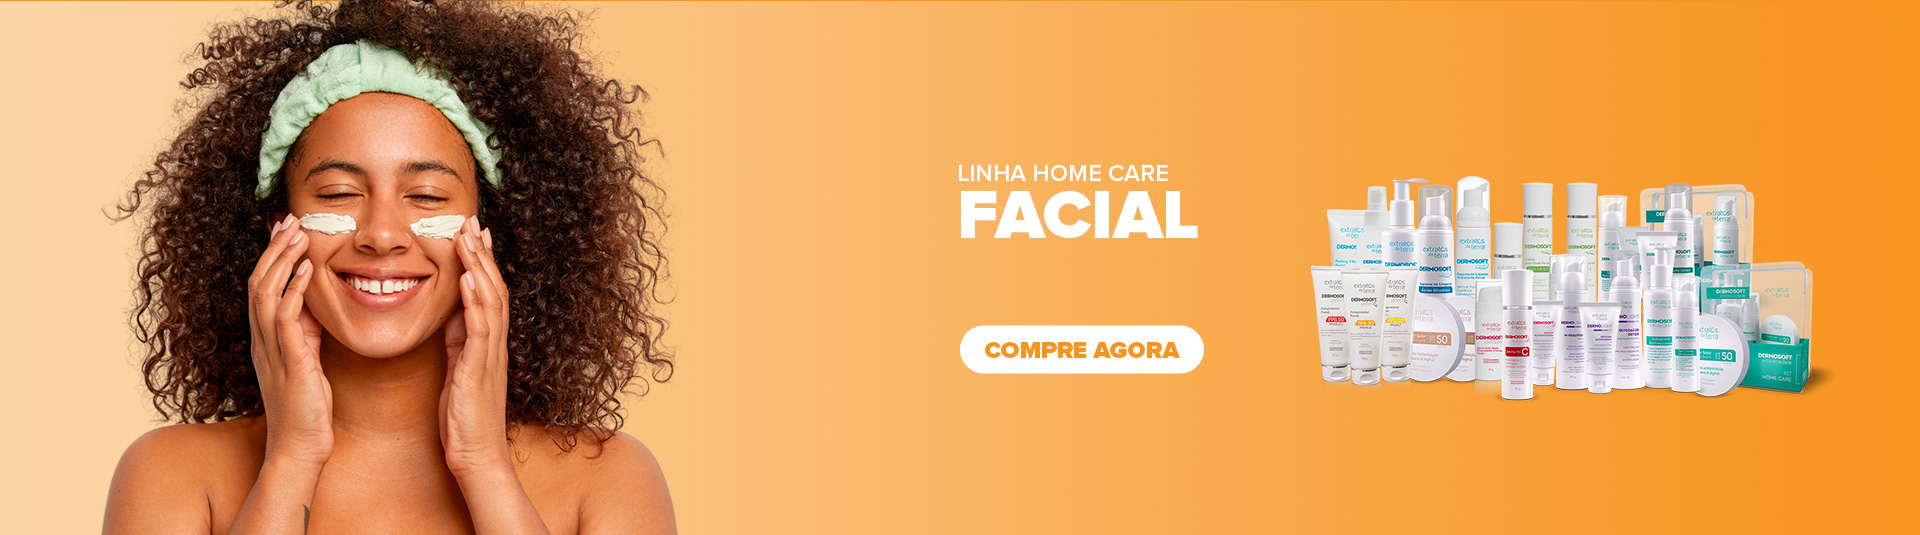 Facial Home Care